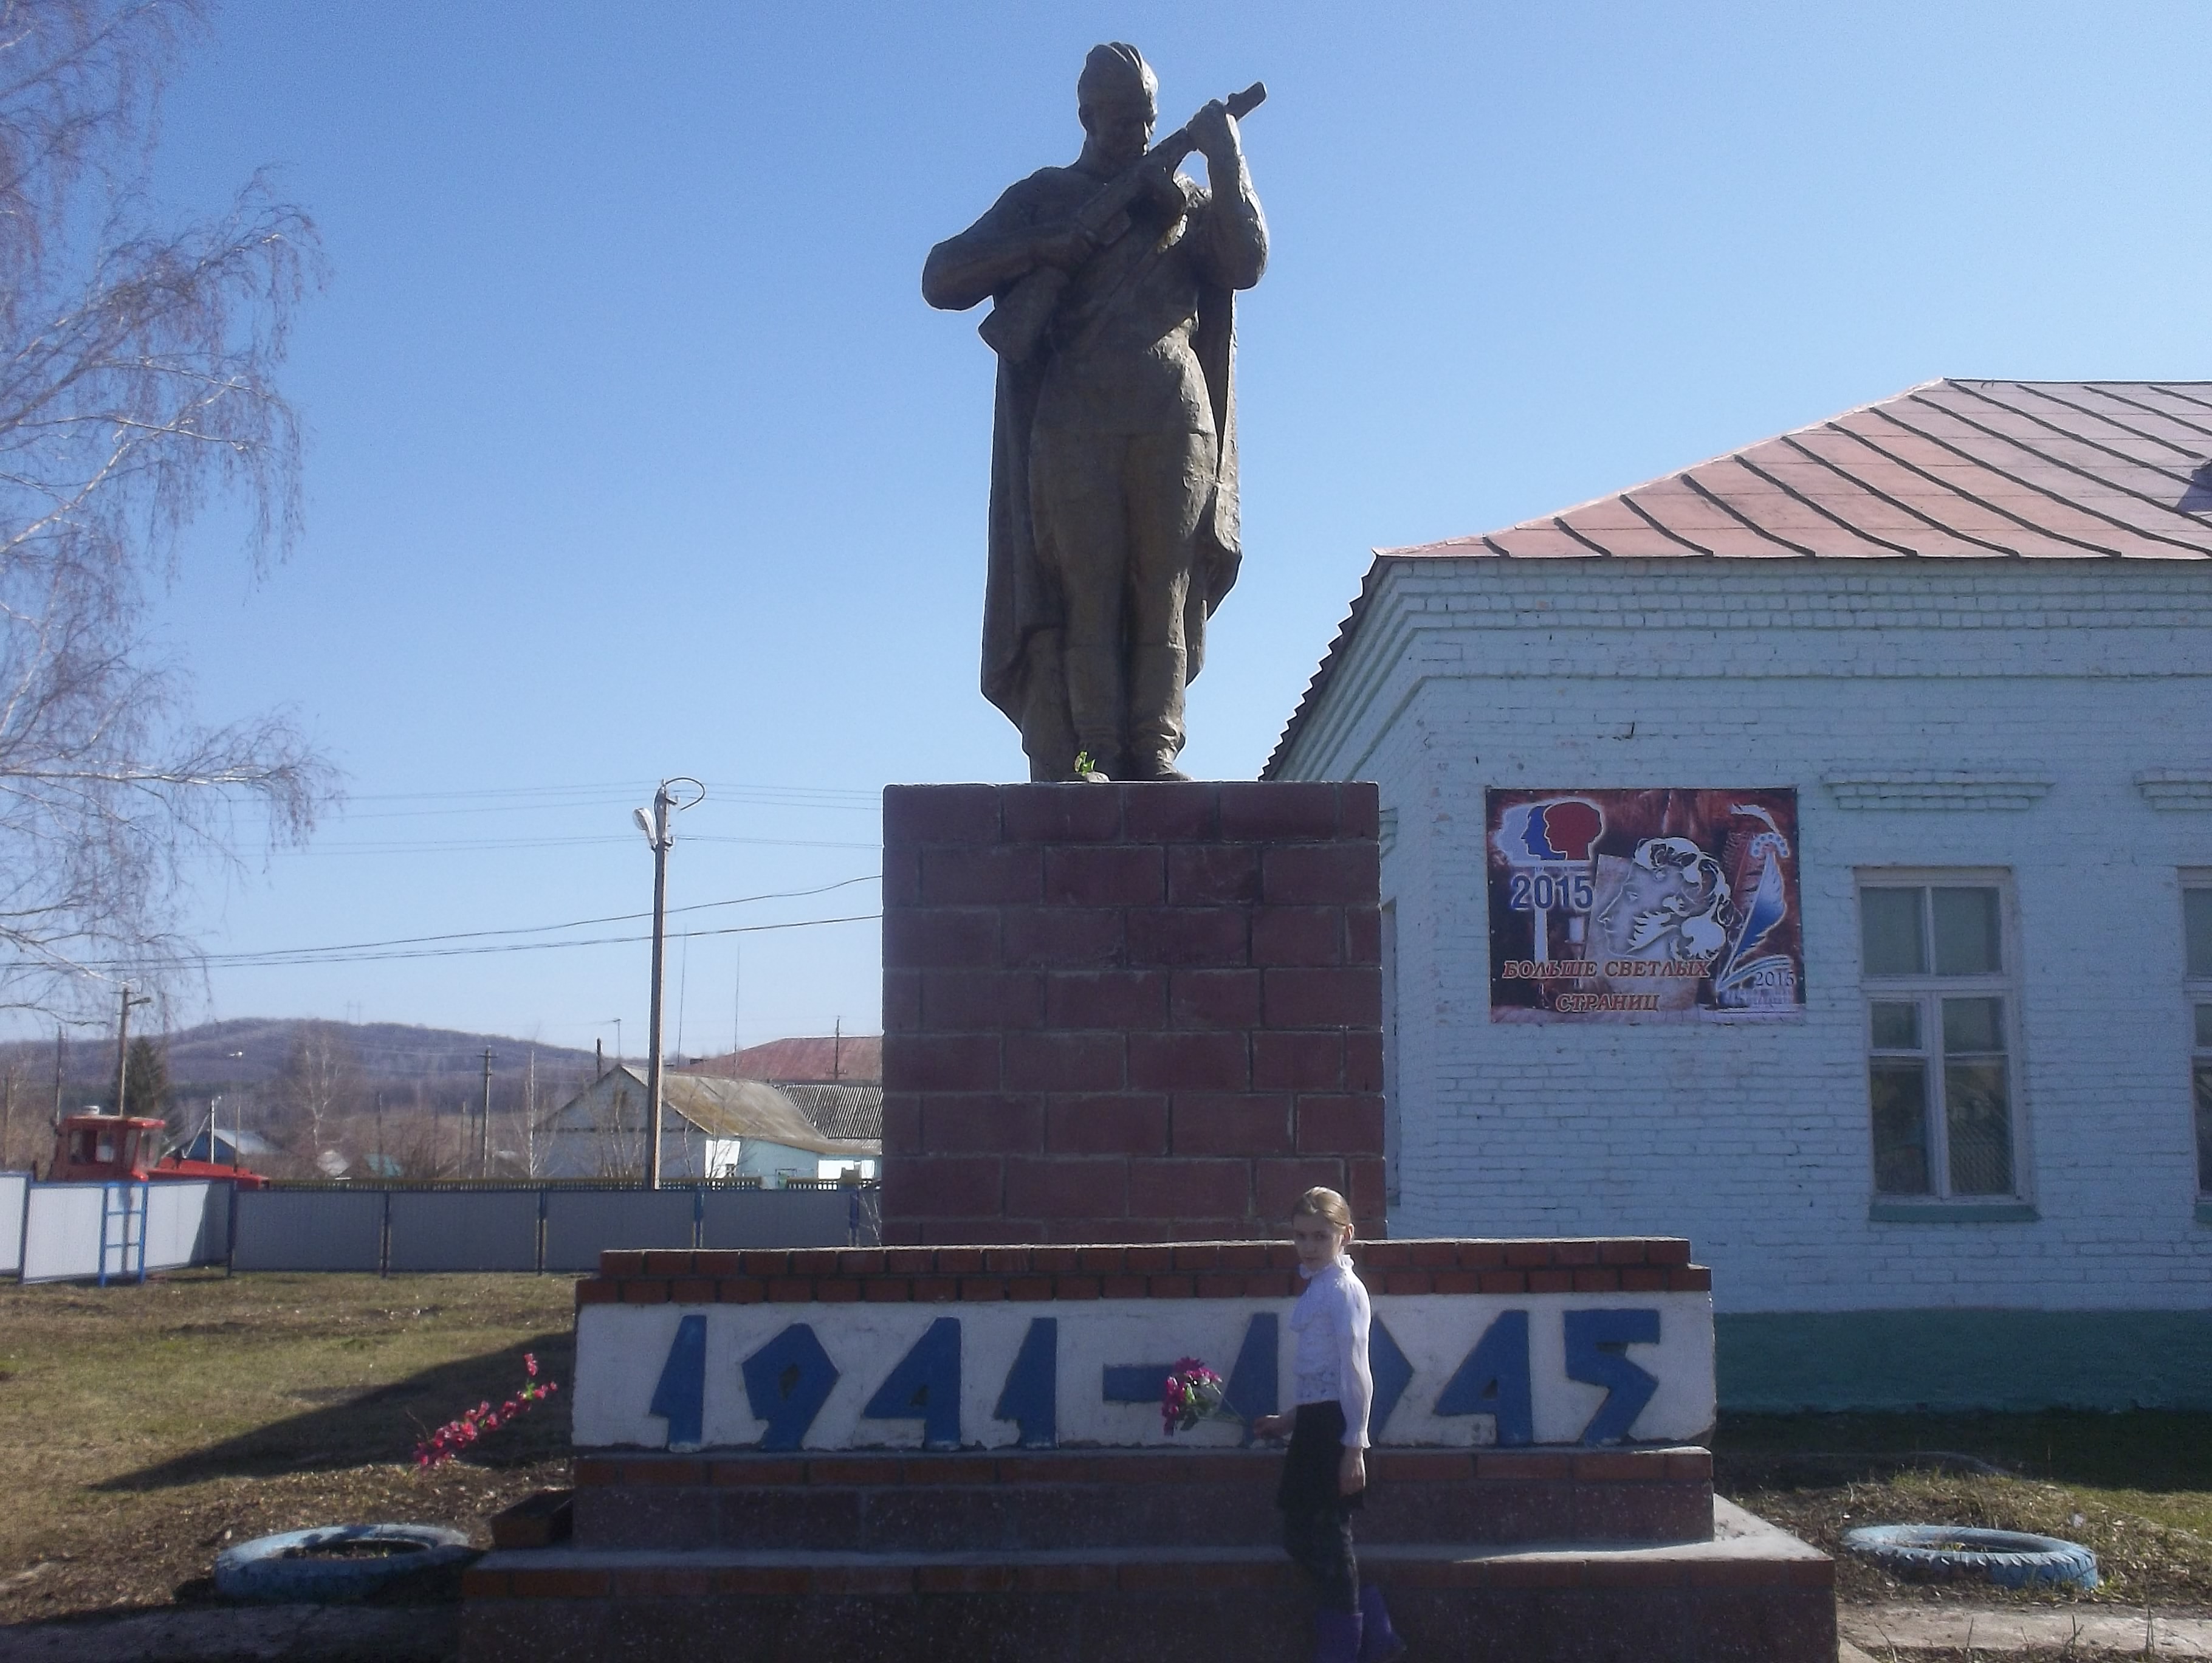 Ржев памятник солдату журавли как доехать из москвы на машине карта